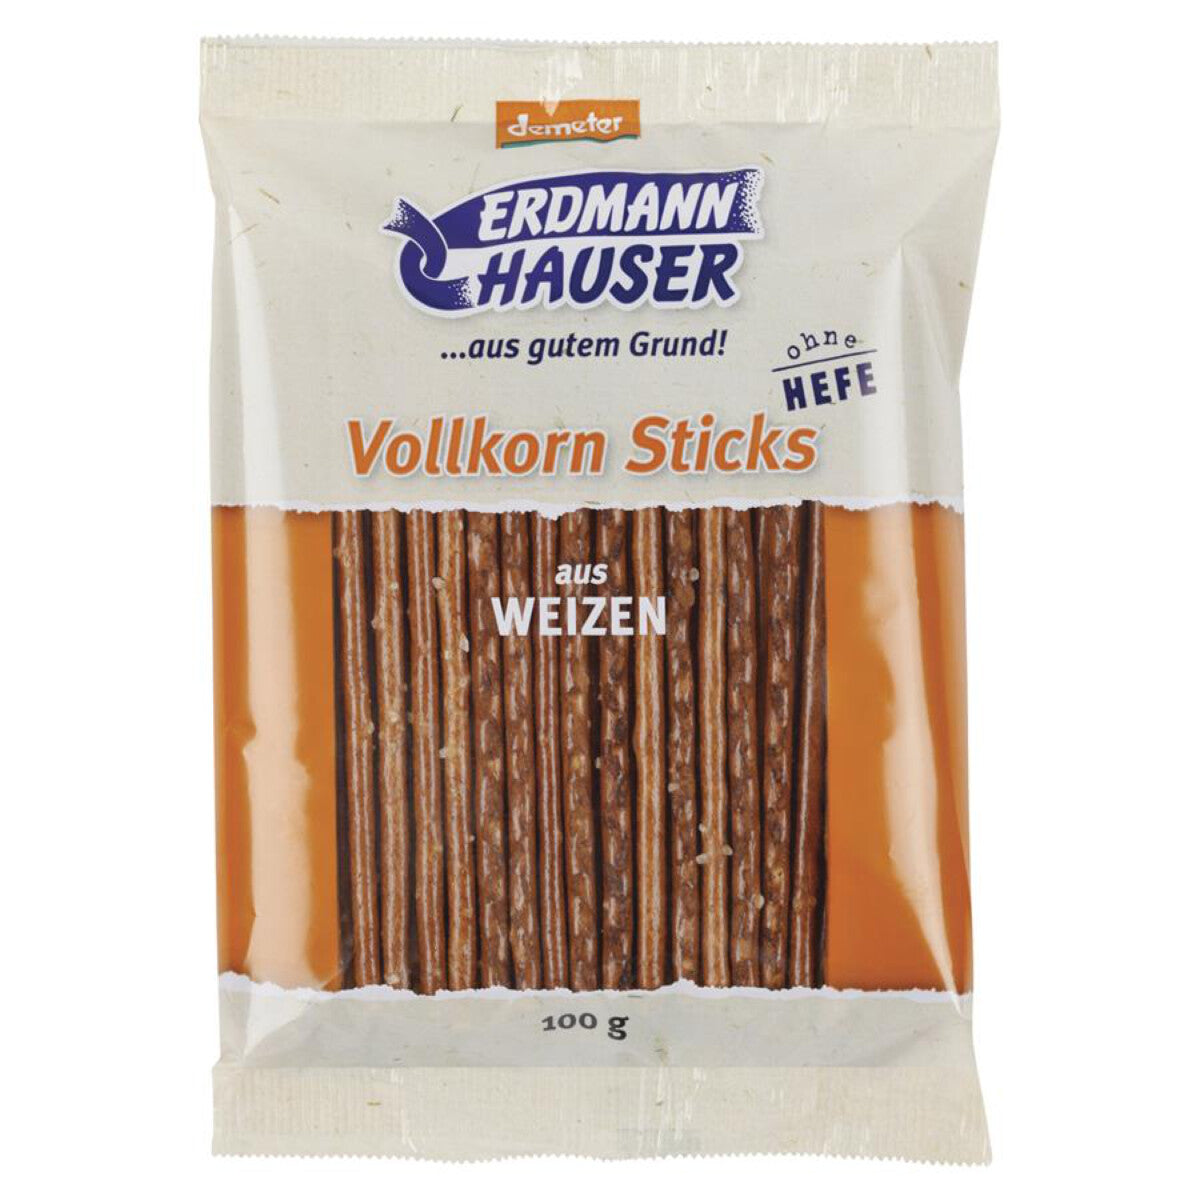 ERDMANNHAUSER Weizen Vollkorn Sticks - 100 g